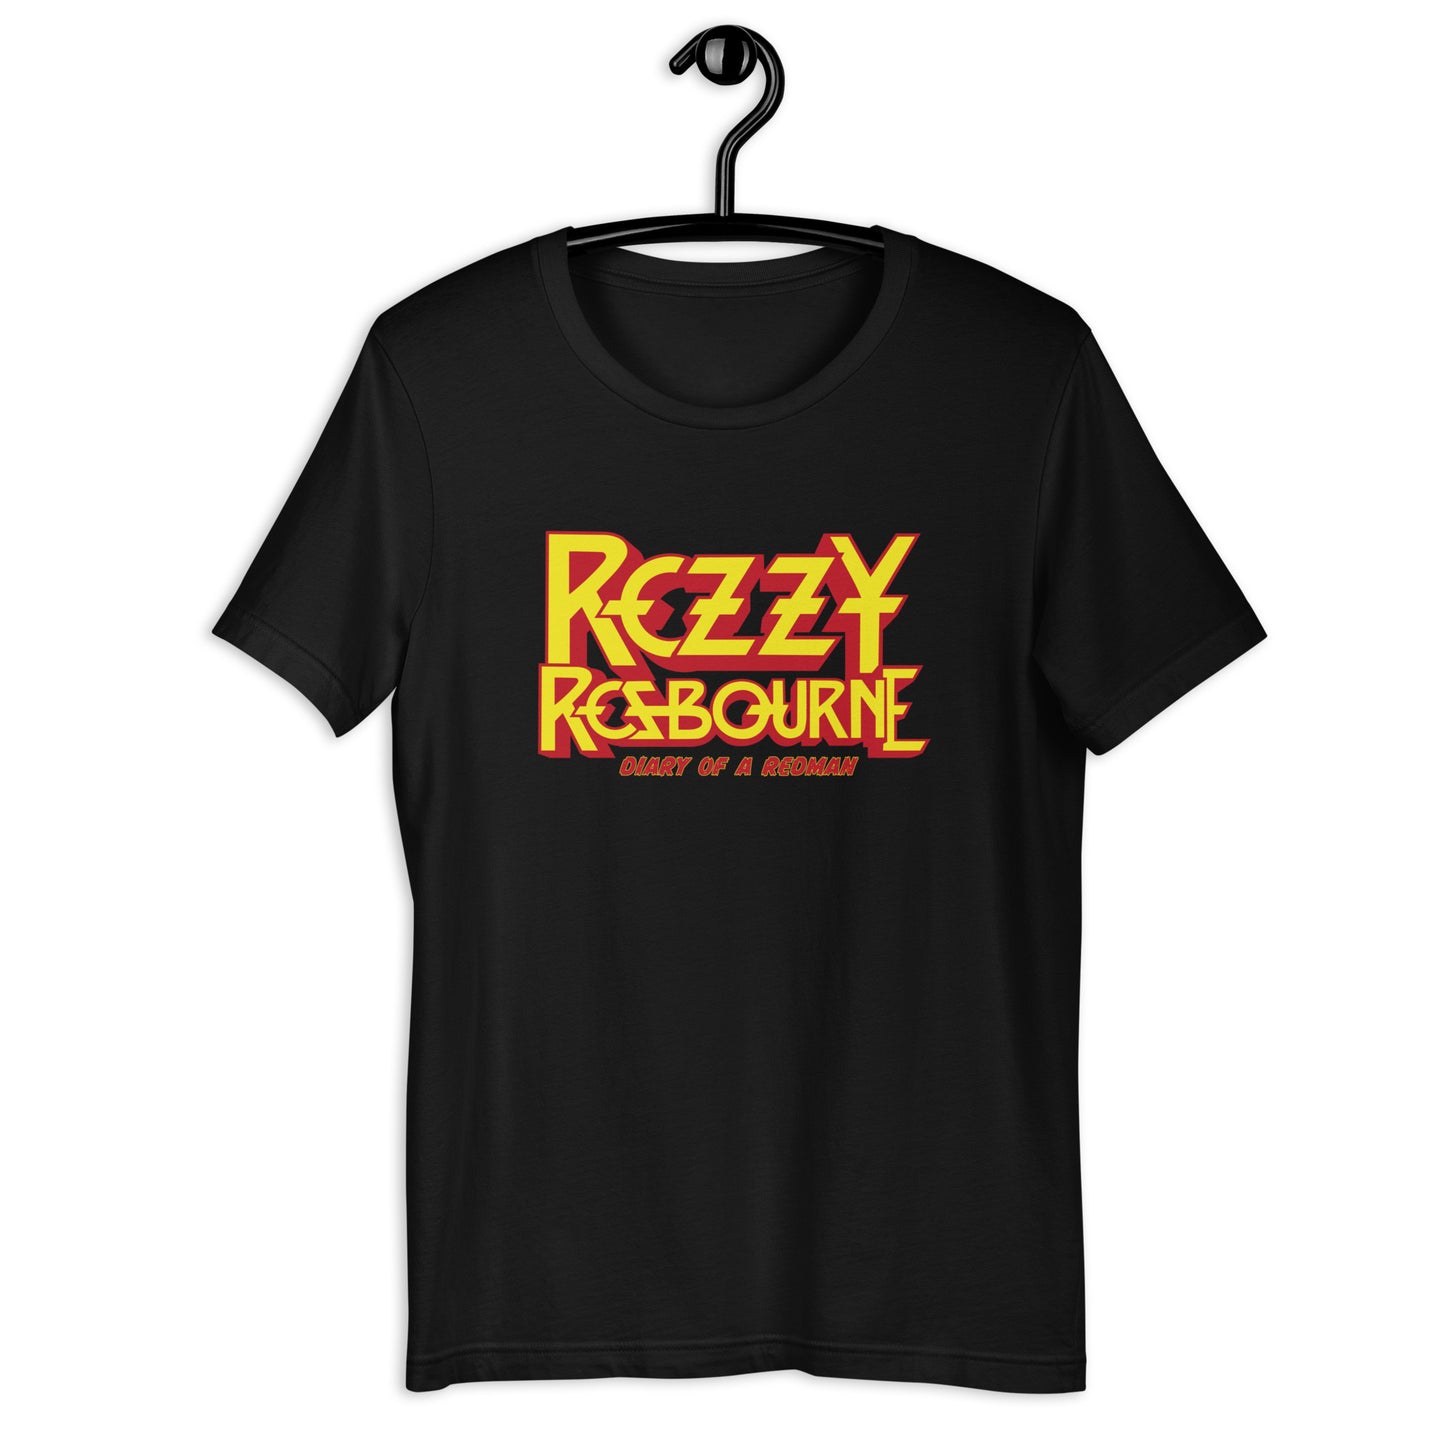 Rezzy Rezbourne